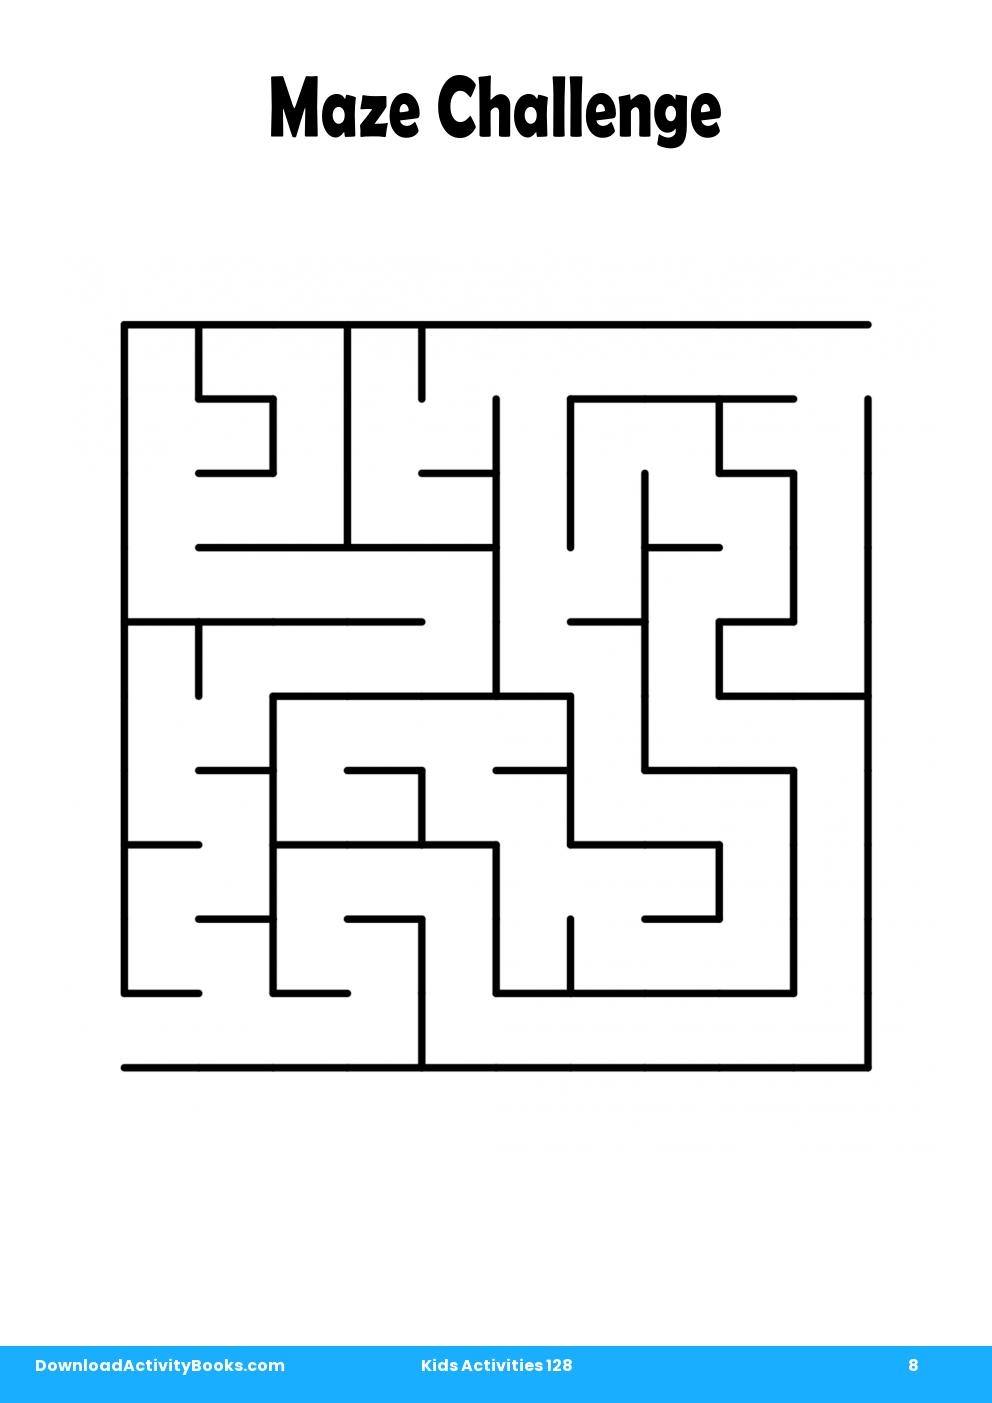 Maze Challenge in Kids Activities 128